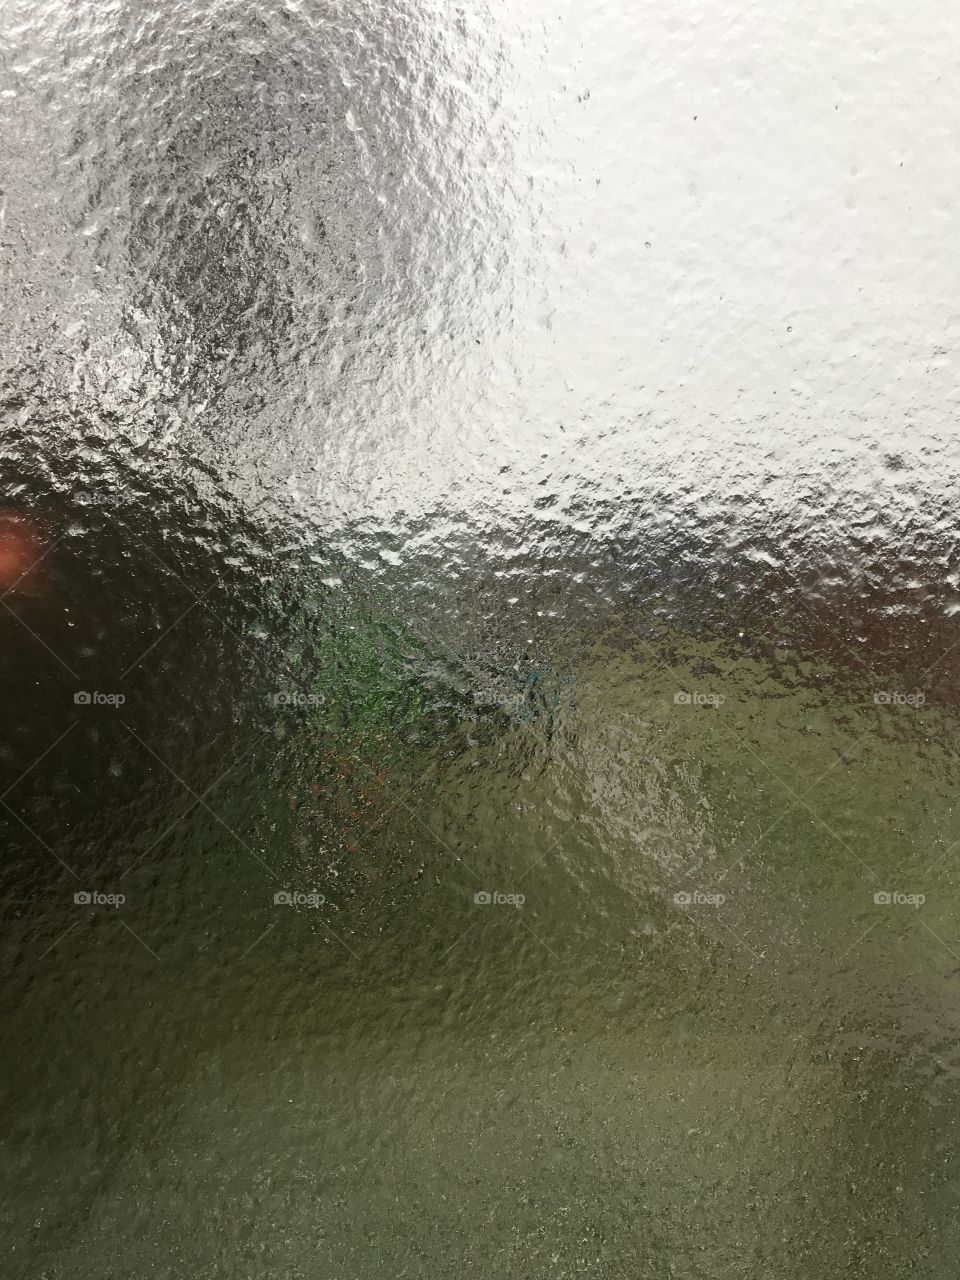 Frozen Window